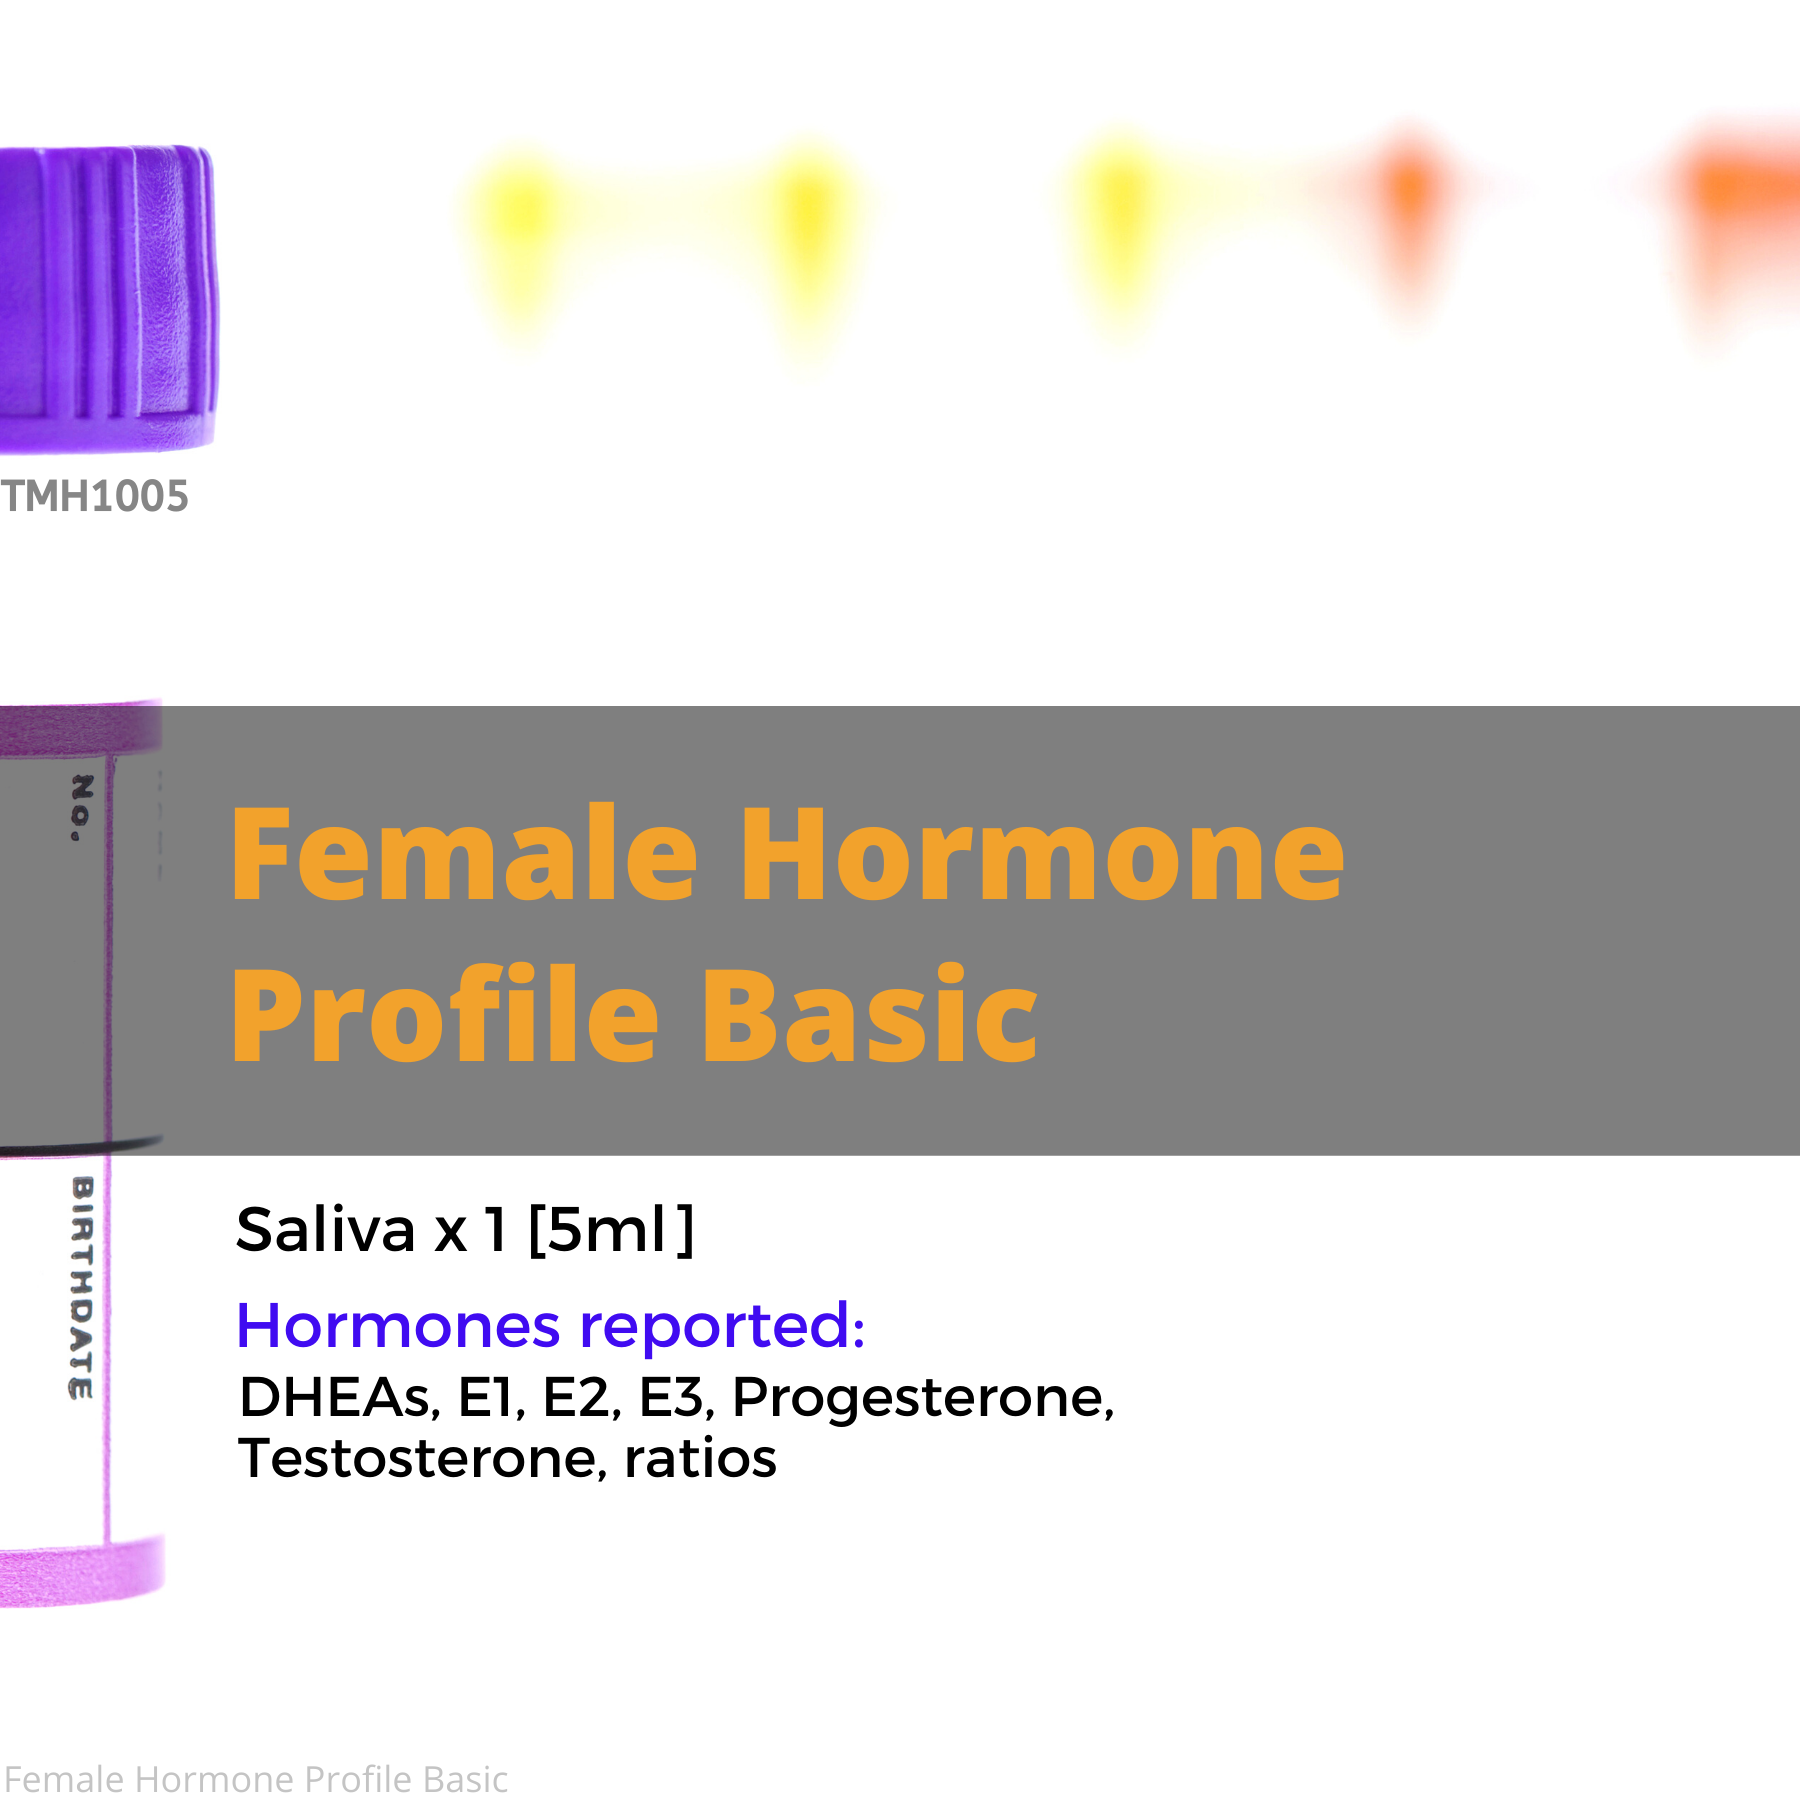 Female Hormone Profile Basic